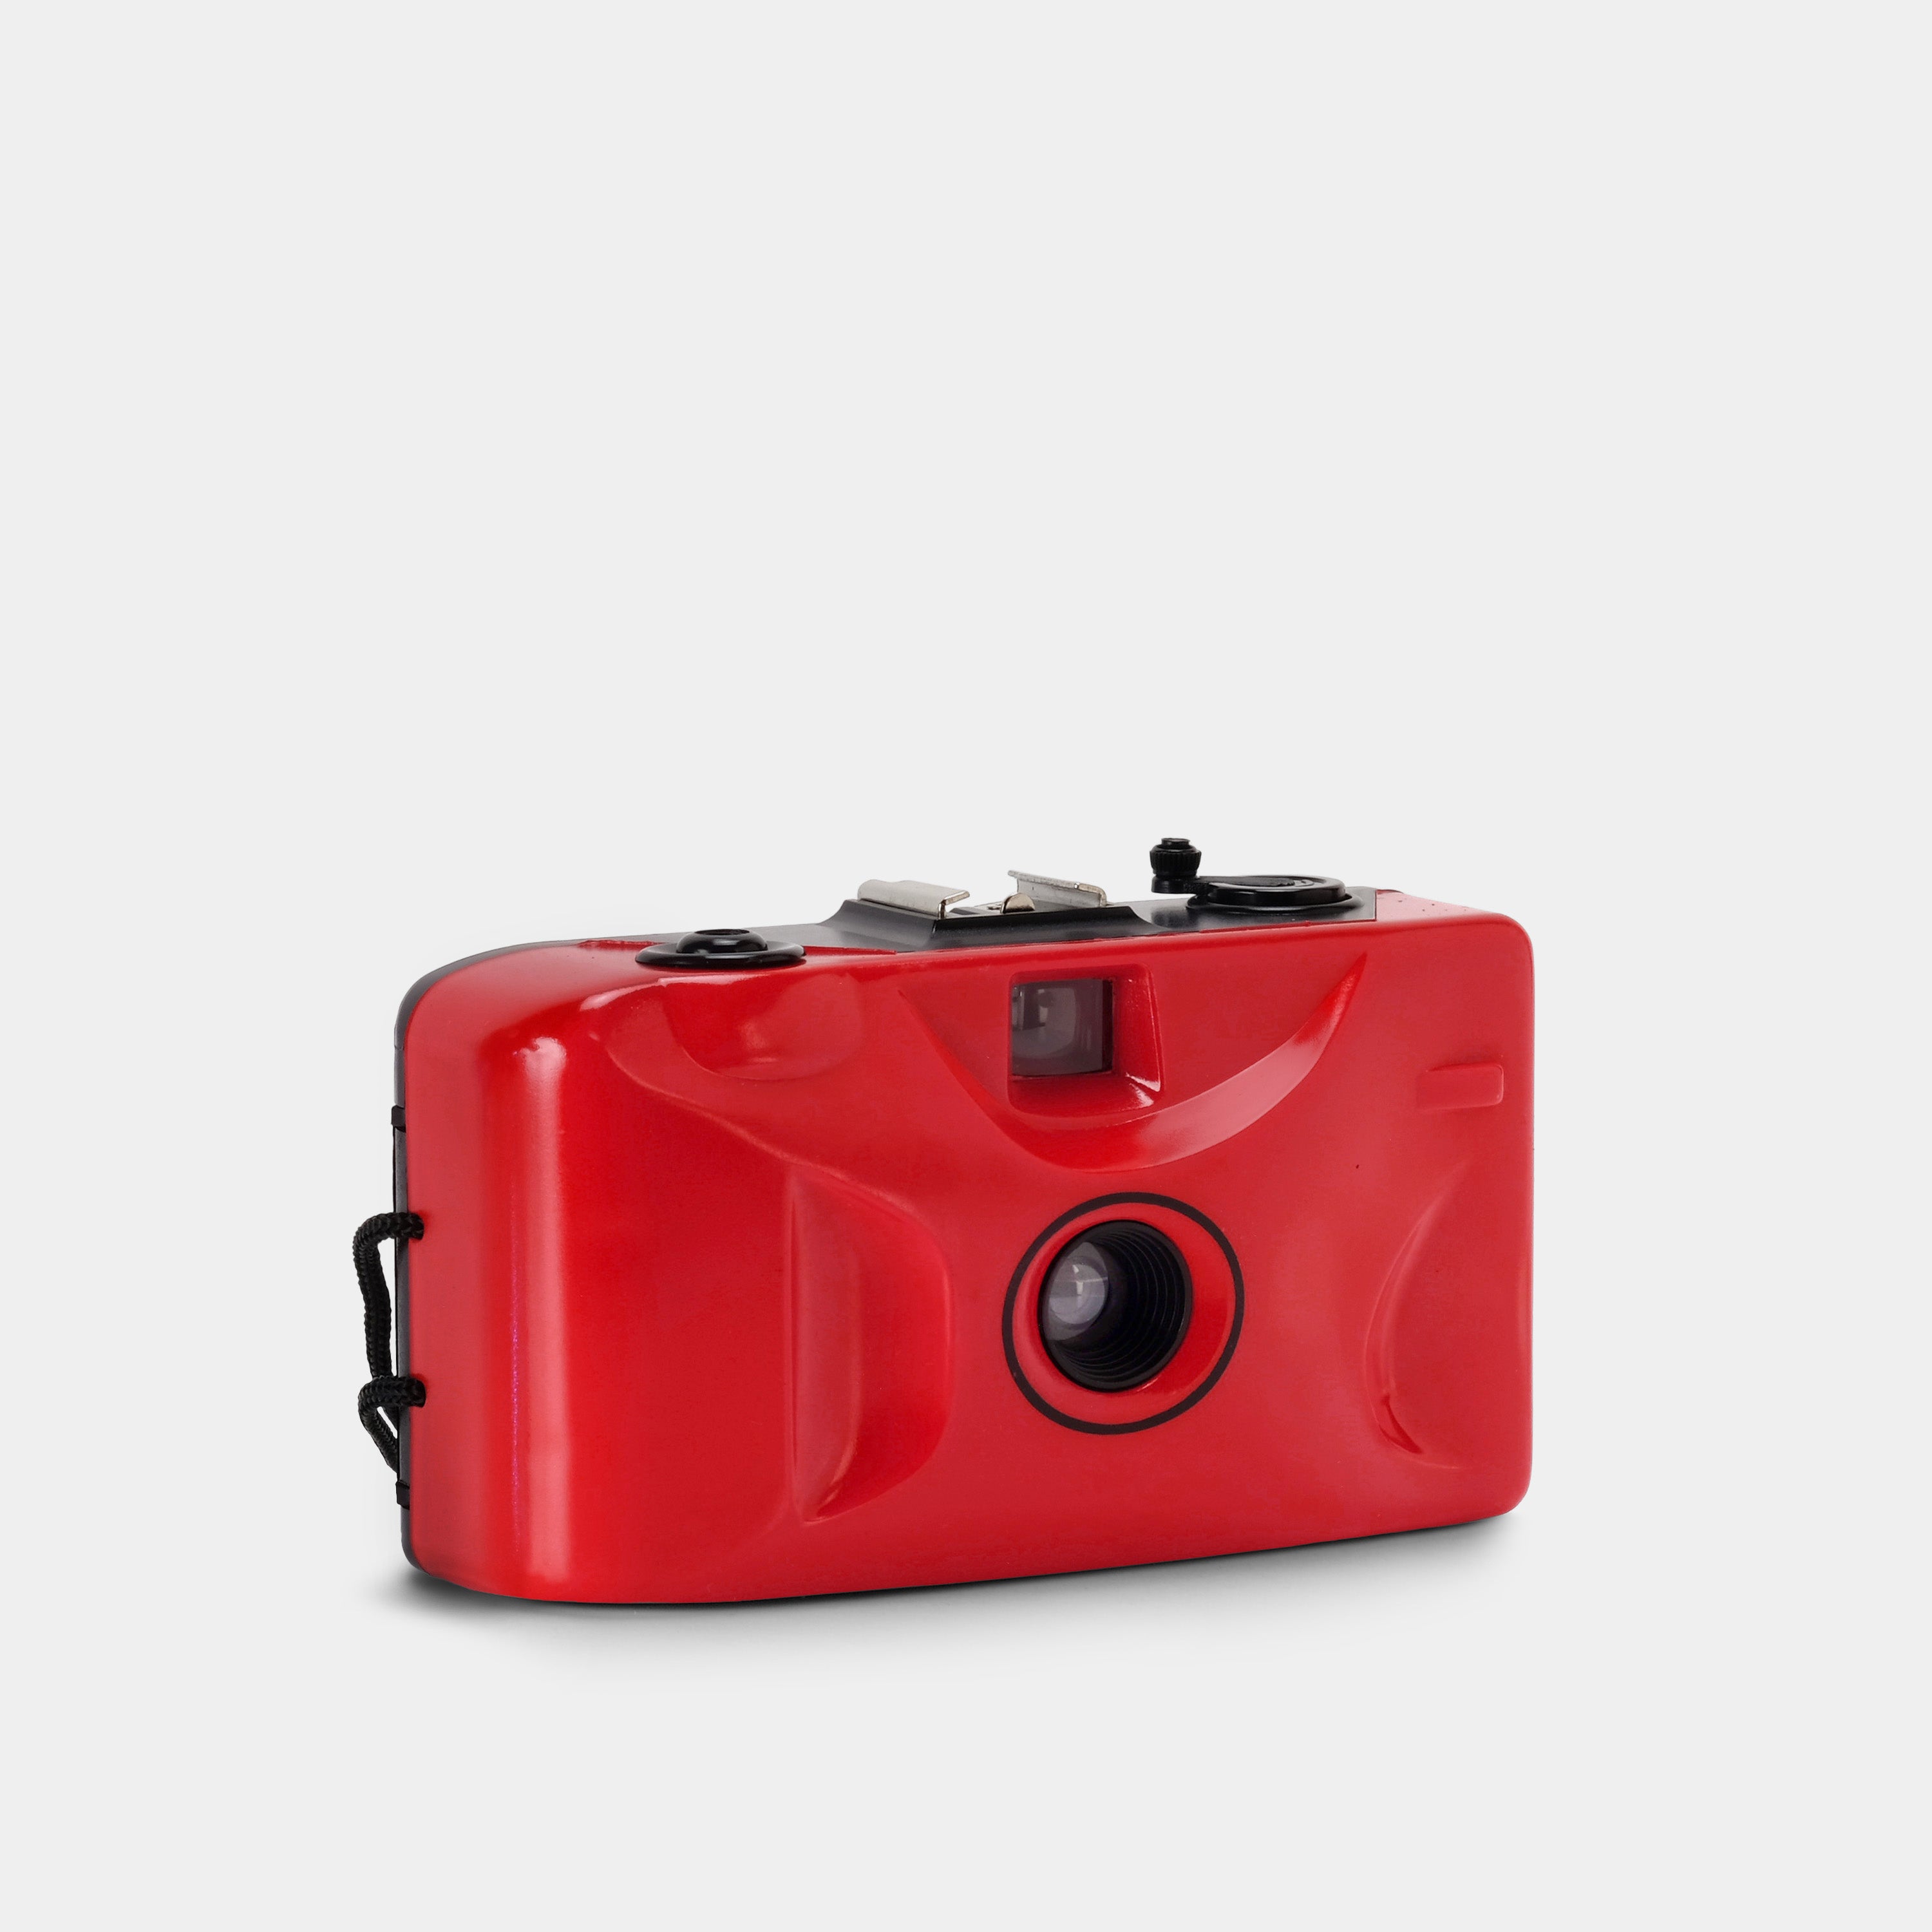 KODAK M38 cámara compacta de 35mm LAVANDER - Foto R3, film lab y